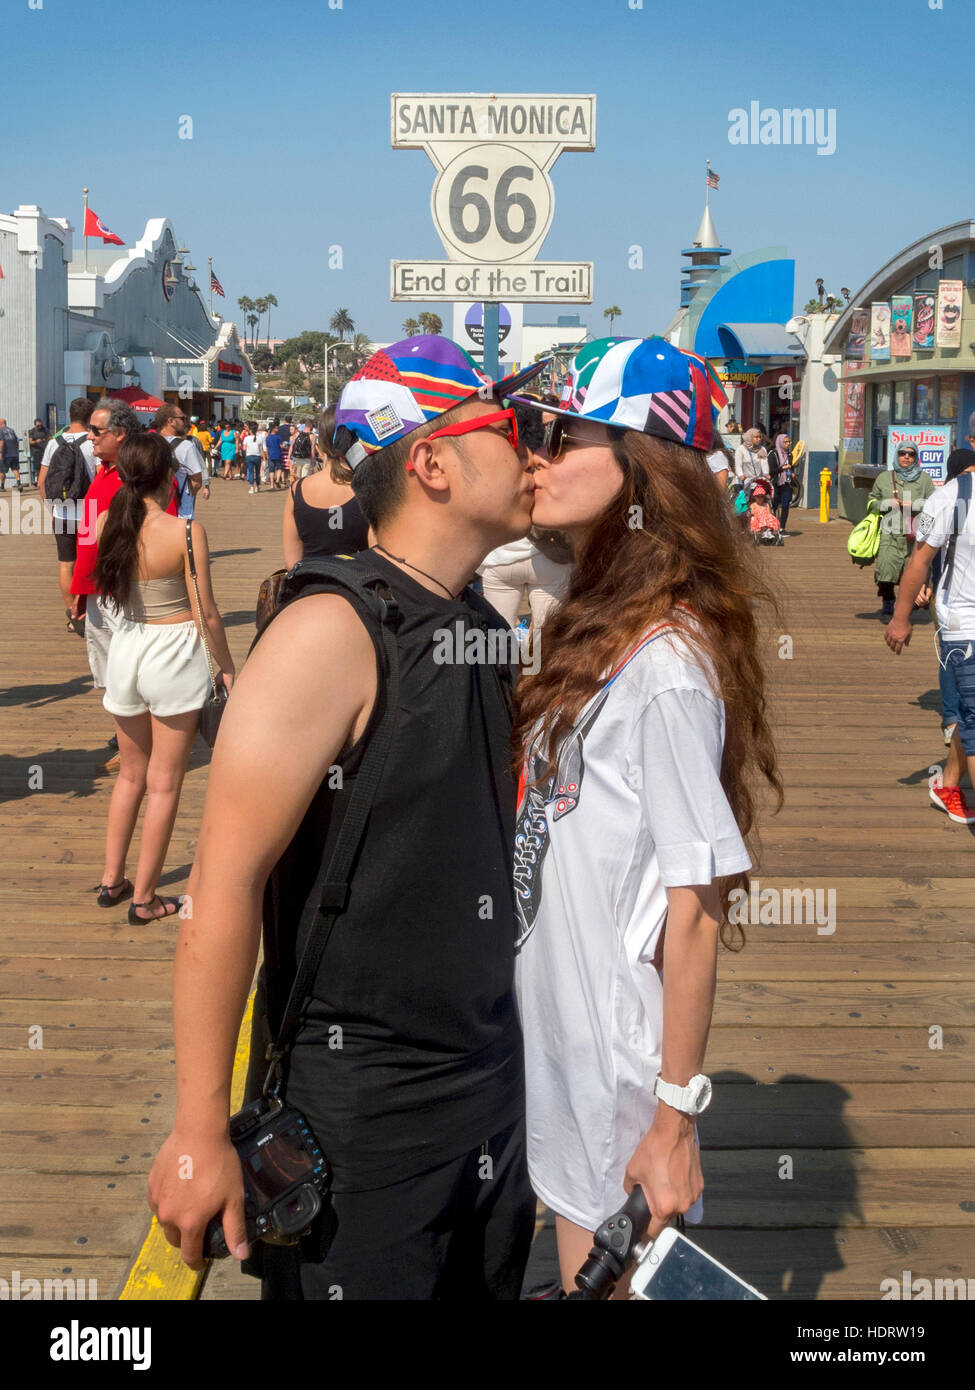 Un couple américain asiatique baiser sur la jetée d'amusement à Santa Monica, CA, à l'extrémité ouest de la route US 66 autoroute. Remarque signe. Banque D'Images